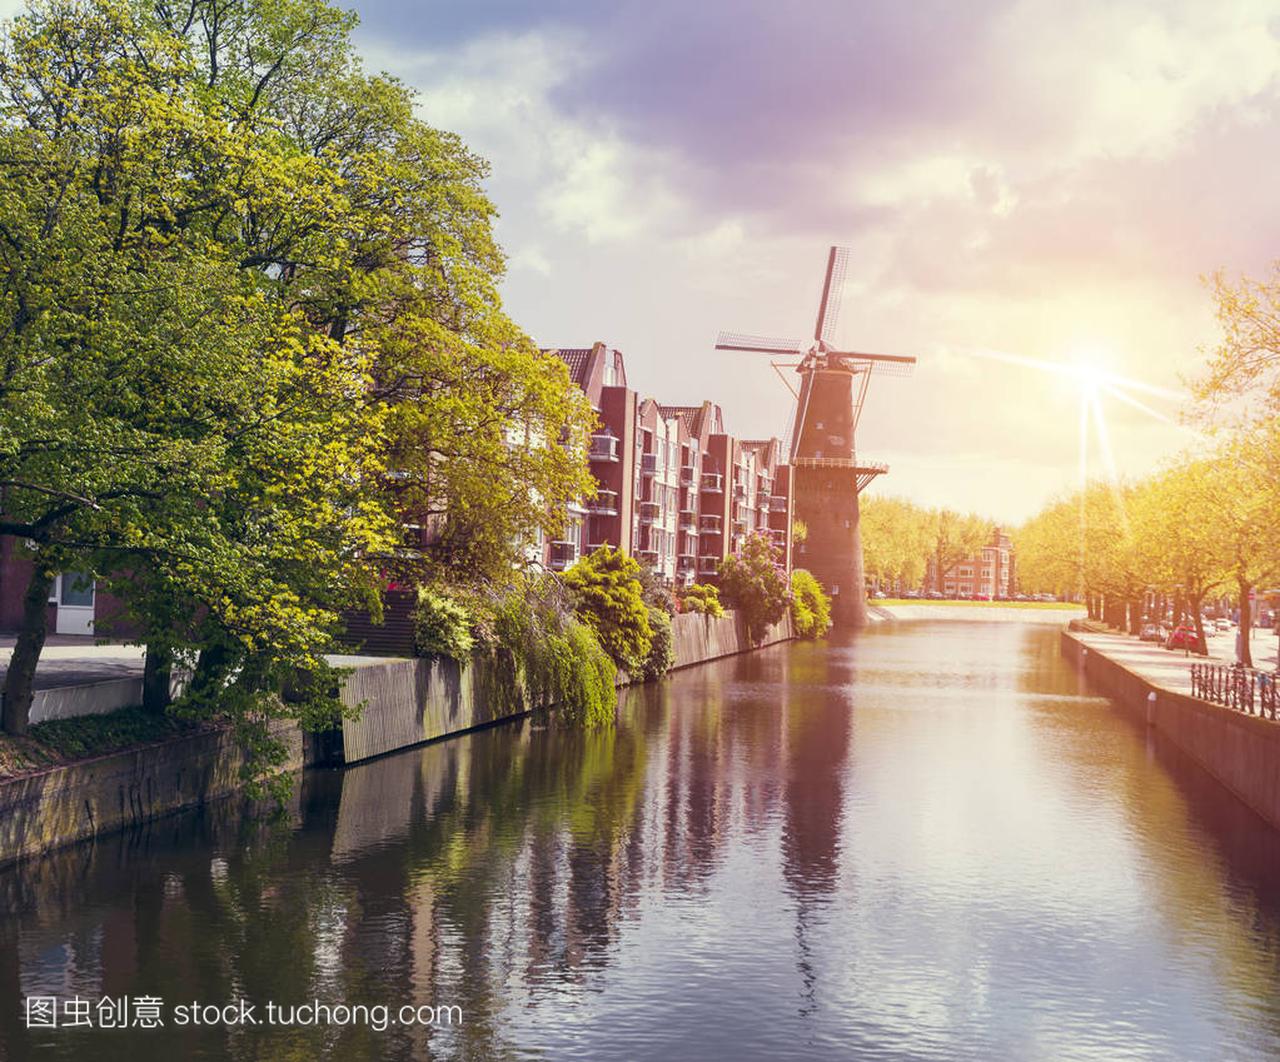 斯特丹运河在日落时。阿姆斯特丹是荷兰人口最